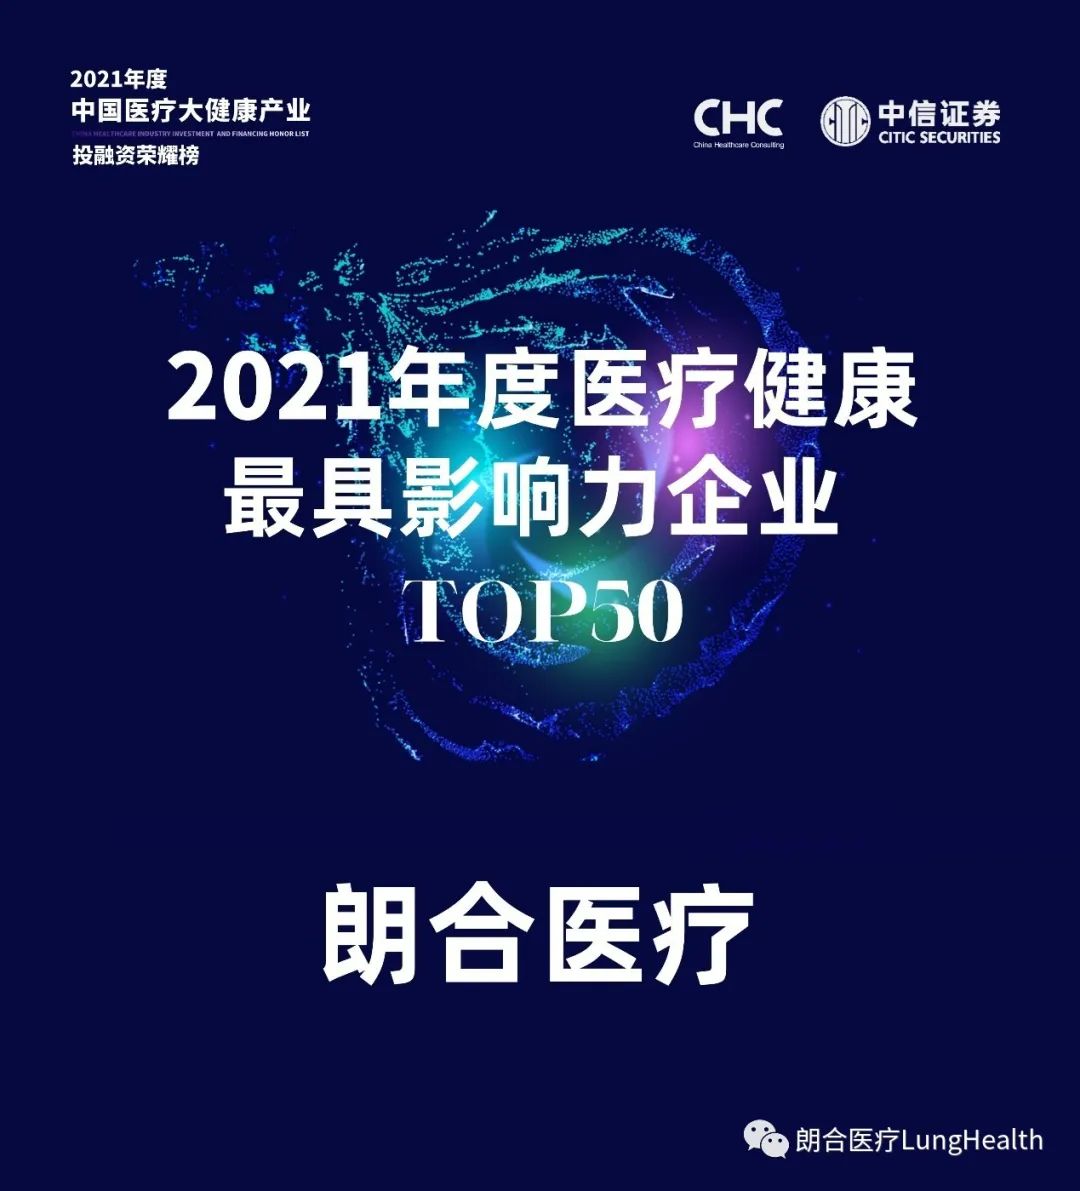 朗合医疗荣获【2021年度医疗健康最具影响力企业TOP 50】(图1)